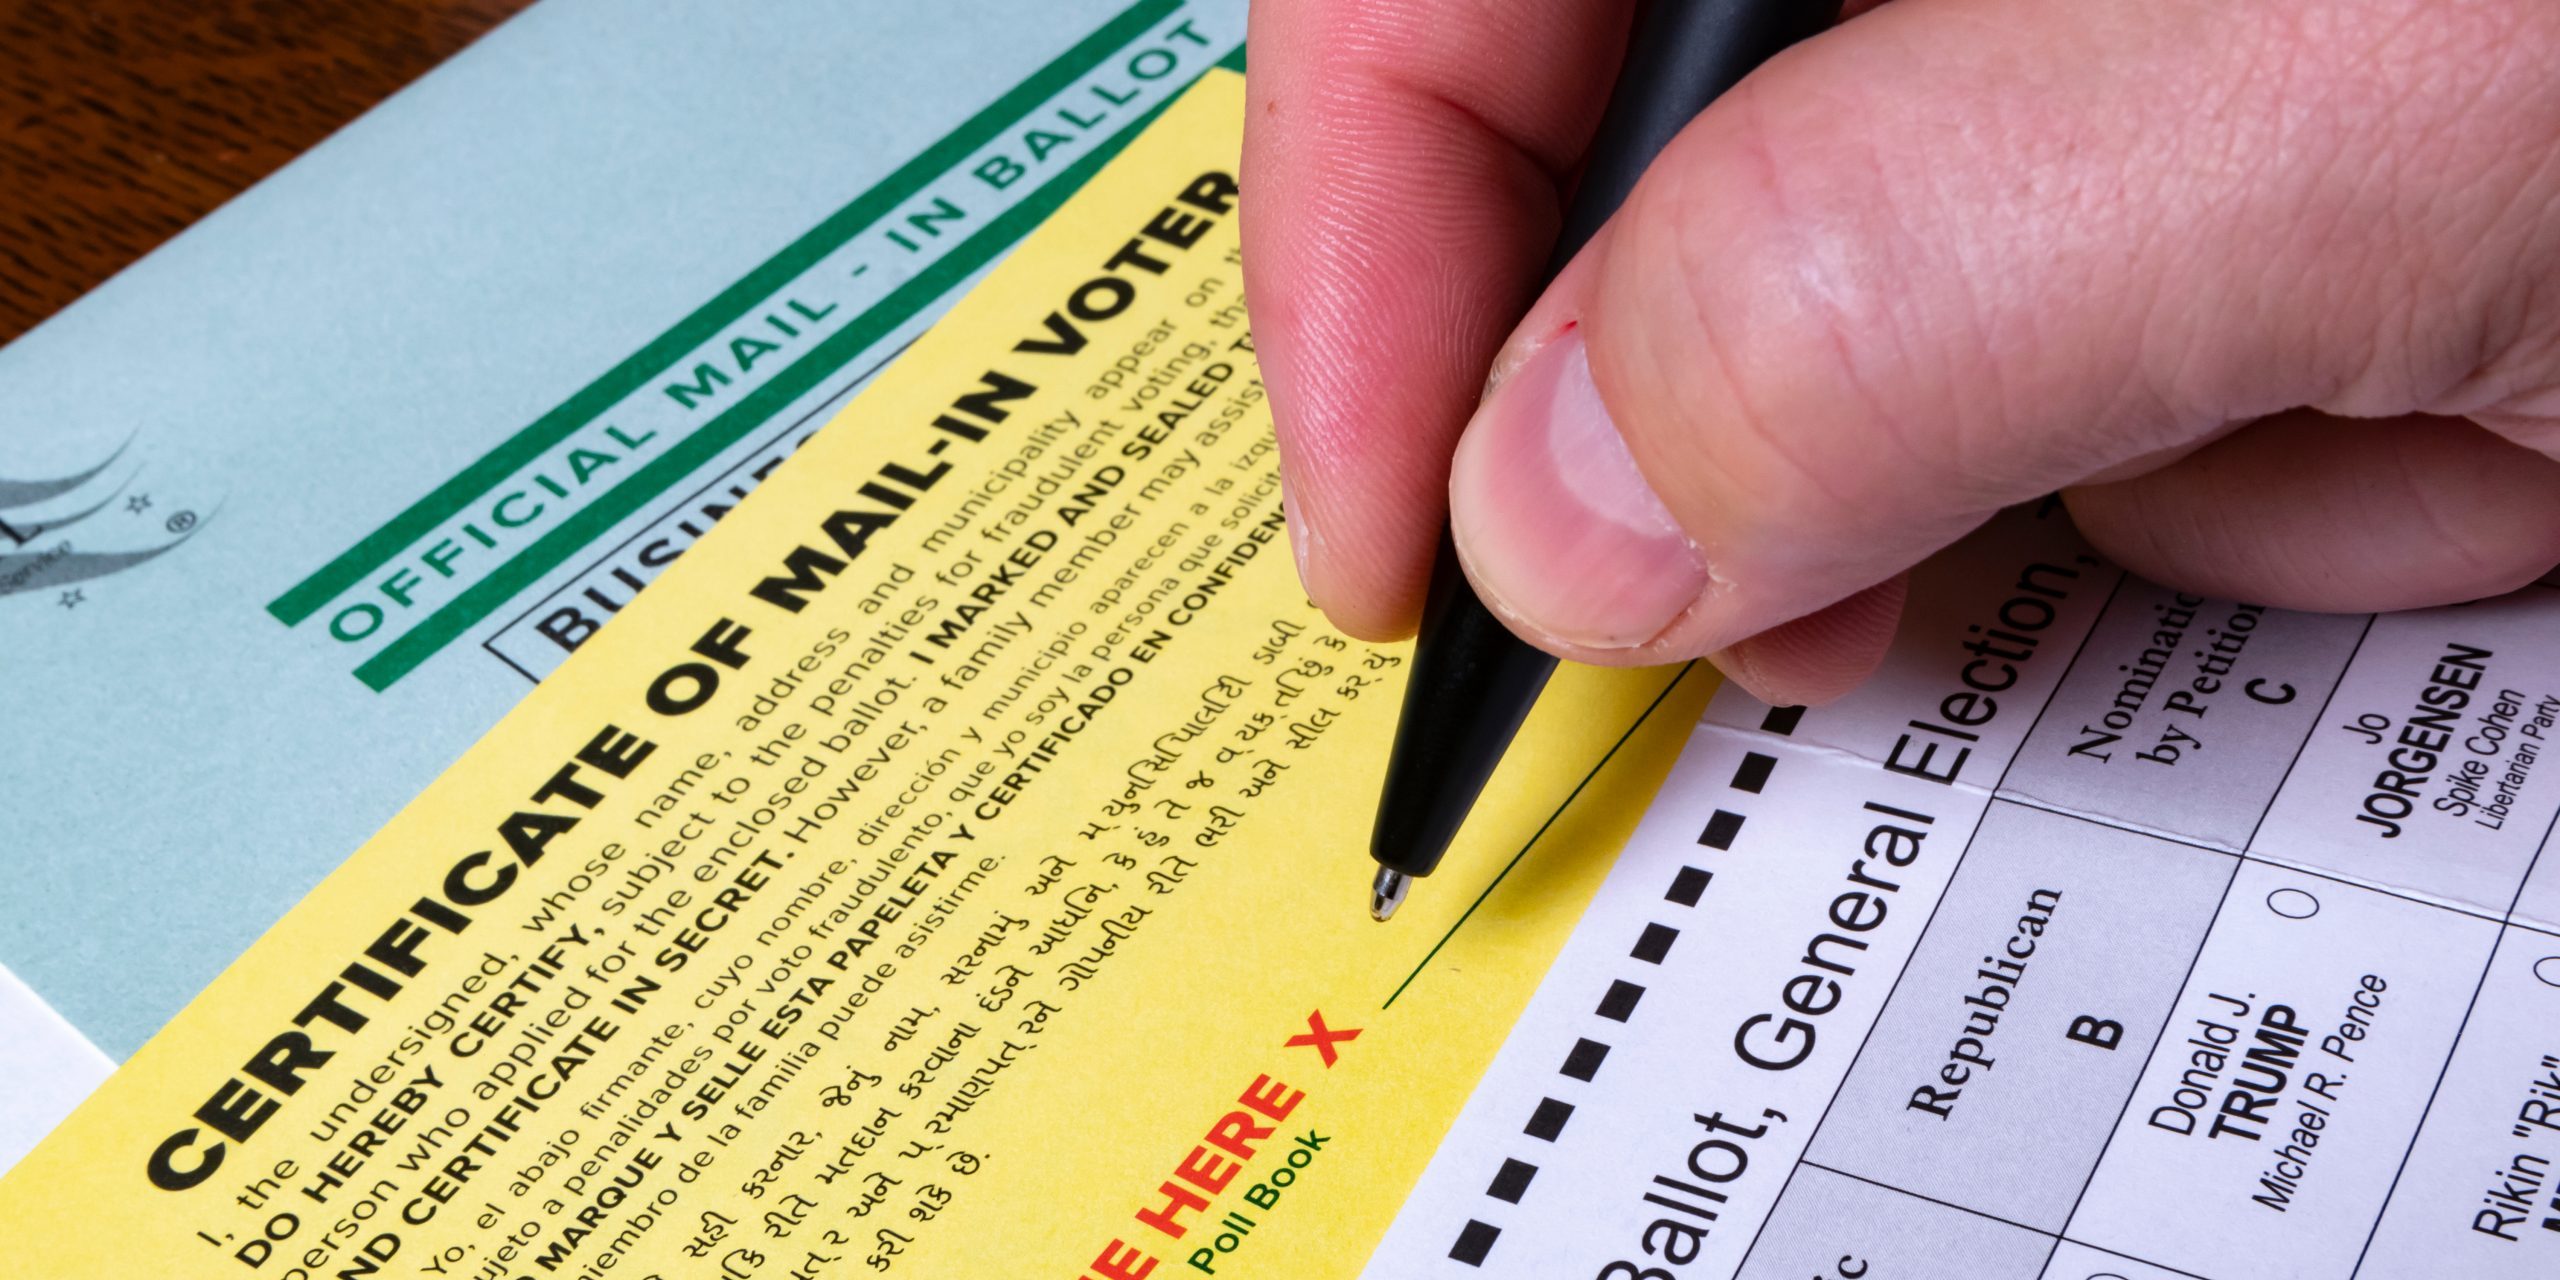 ¿Votan los no ciudadanos en las elecciones federales o estatales?